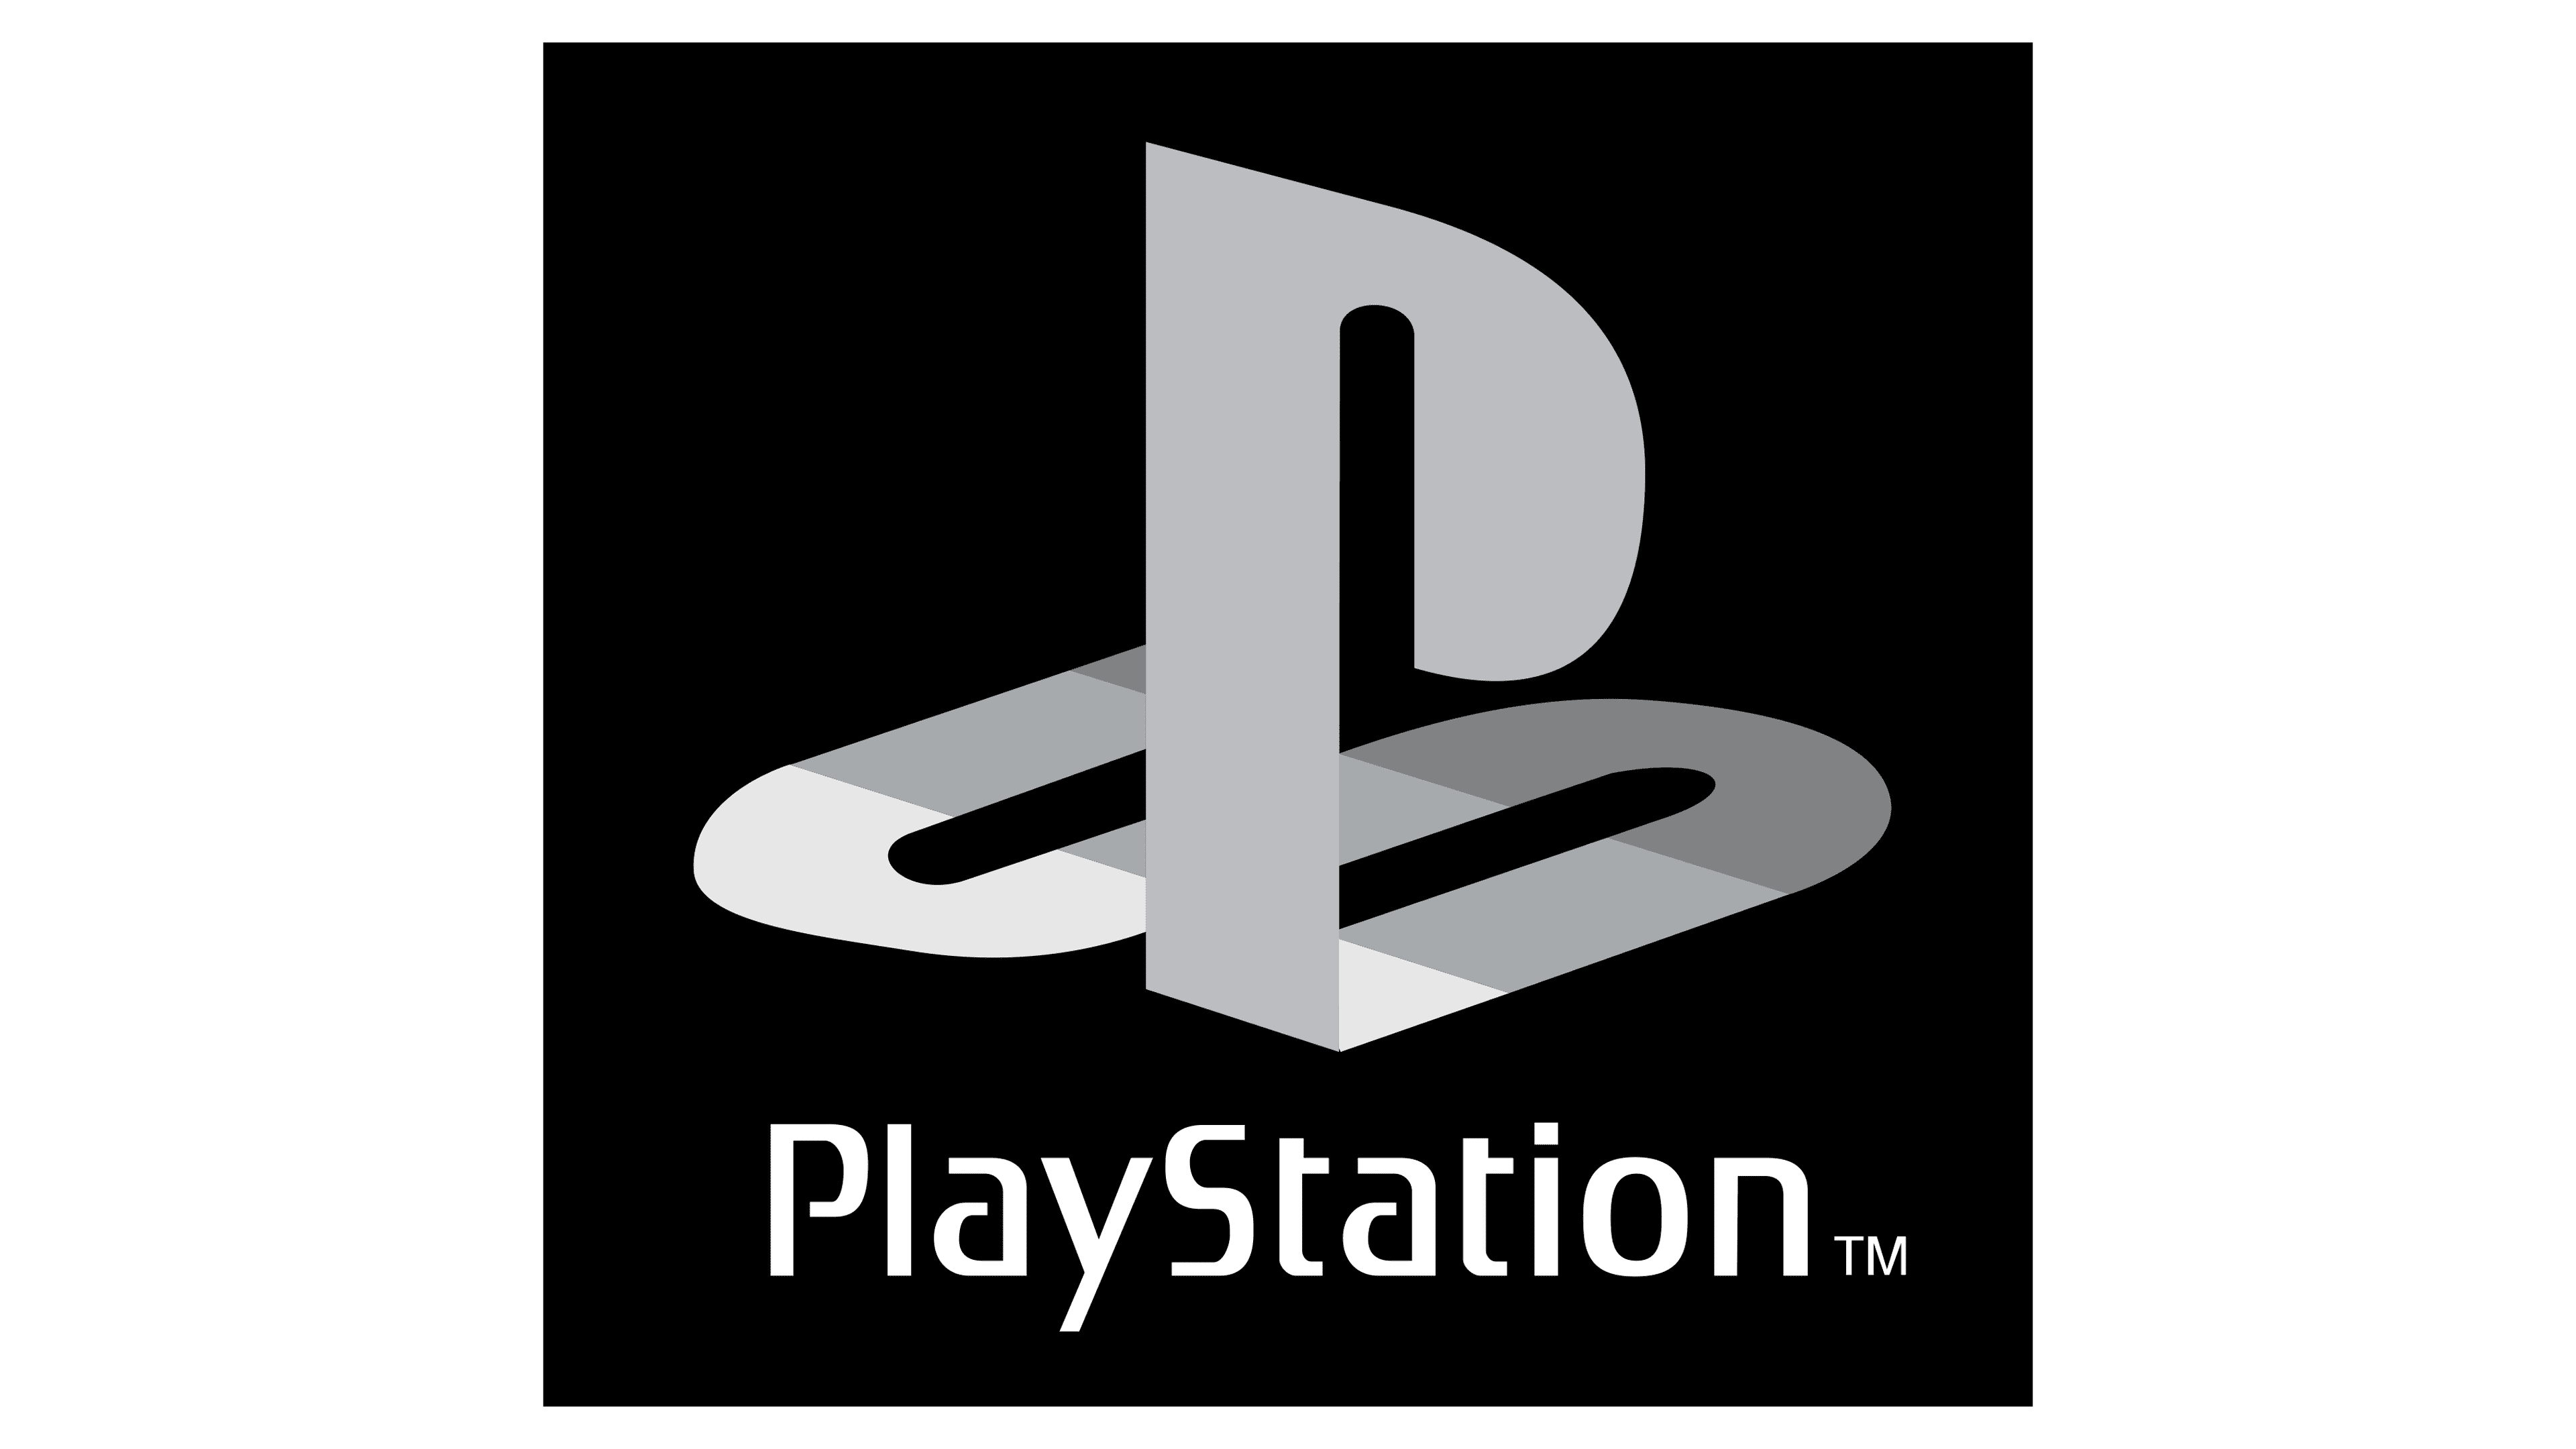 Playstation youtube. Логотип Sony PLAYSTATION 1. Sony PLAYSTATION 4 logo. Надпись плейстейшен. Sony PLAYSTATION надпись.